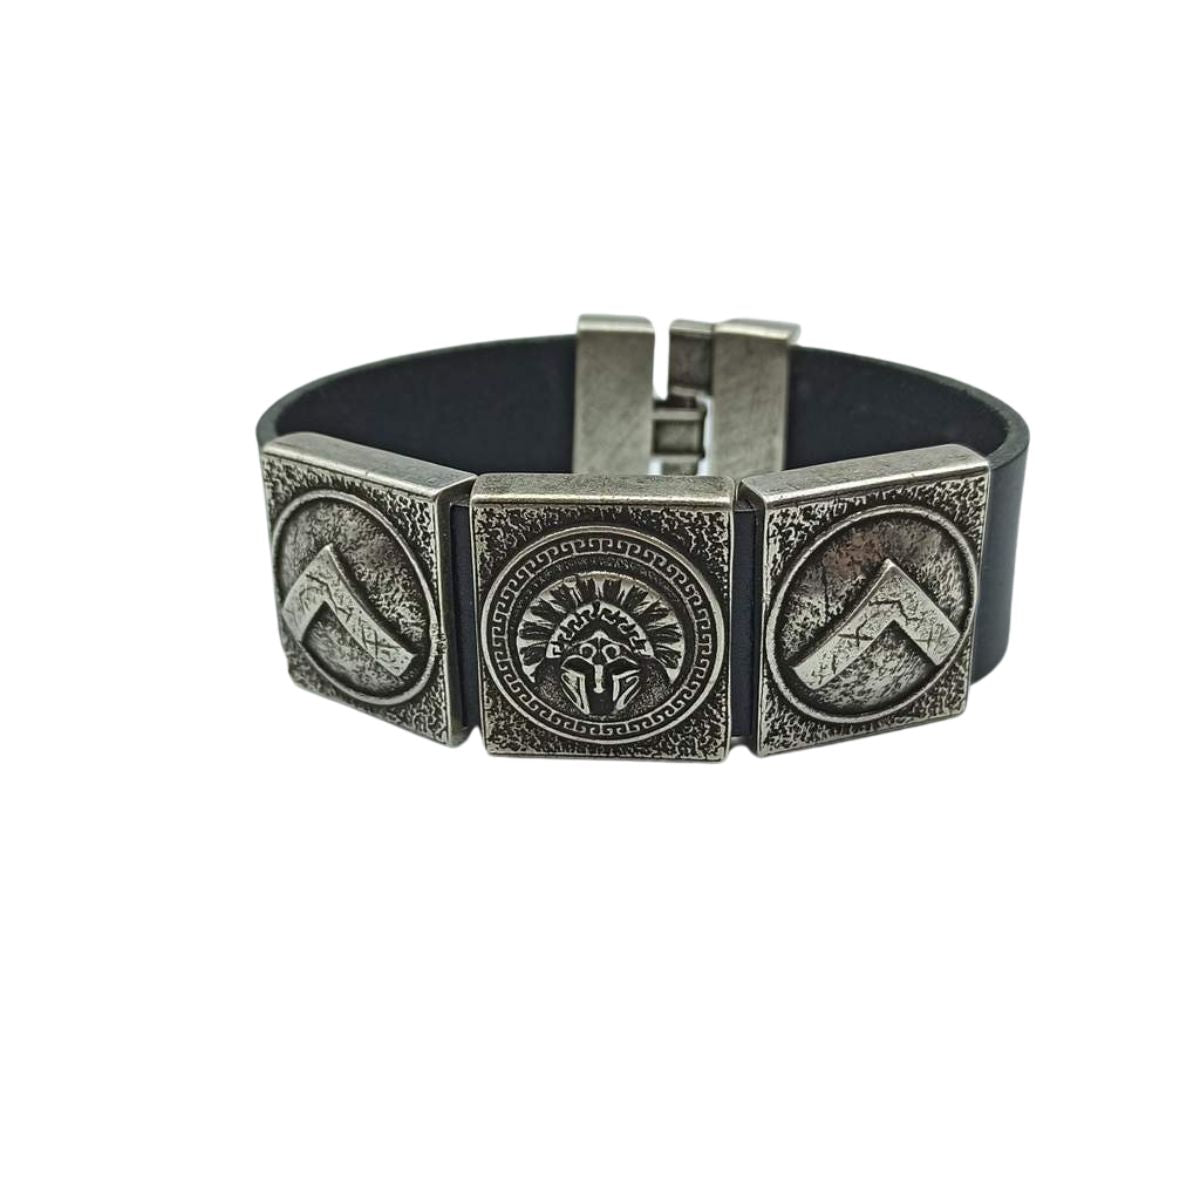 Spartan leather cuff bracelet